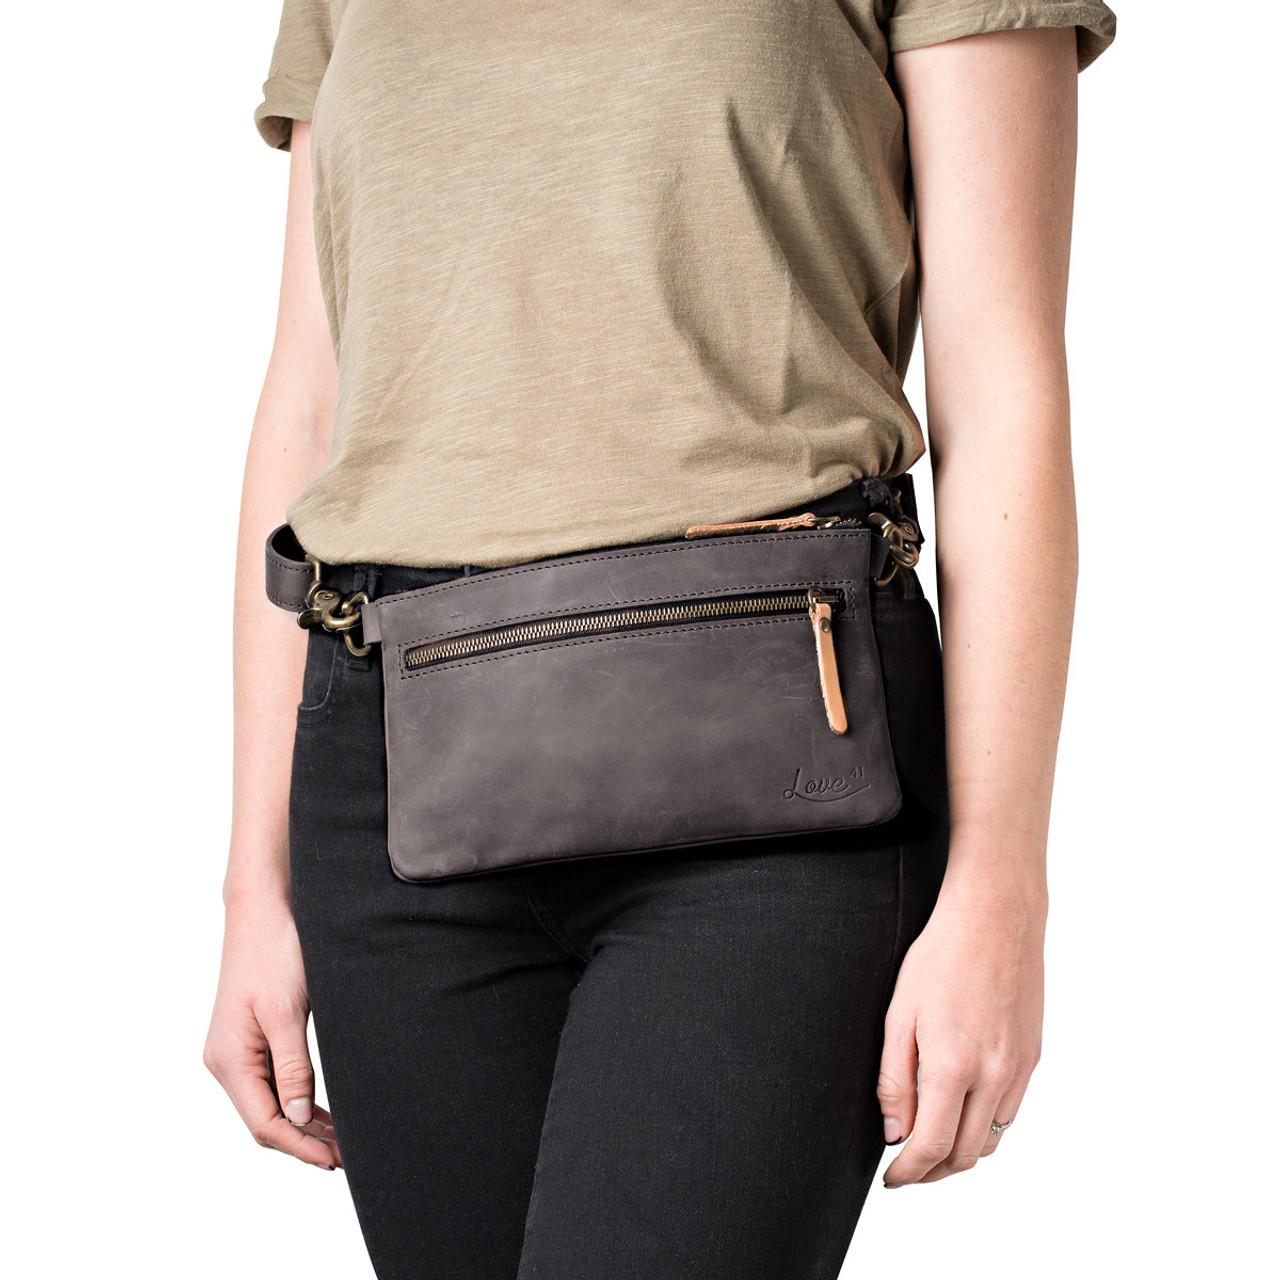 Belly Bag Leather for Women With 2 Straps, Leather Shoulder Bag, Crossbody  Bag Belt Bag With Patterned Strap 